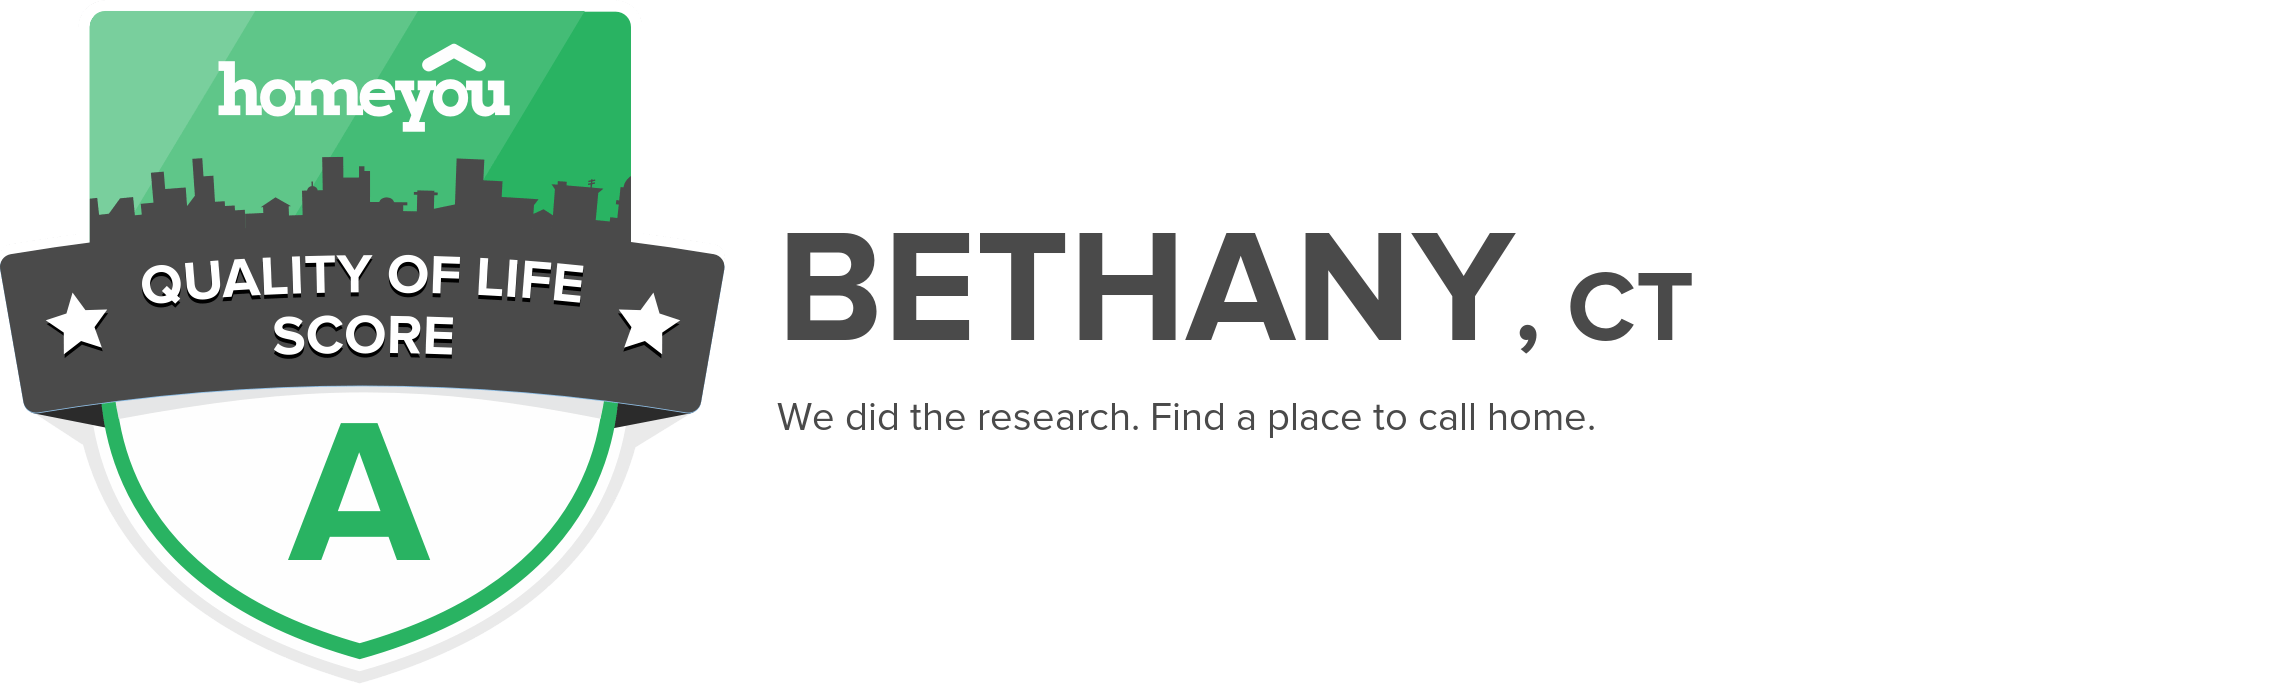 Bethany, CT